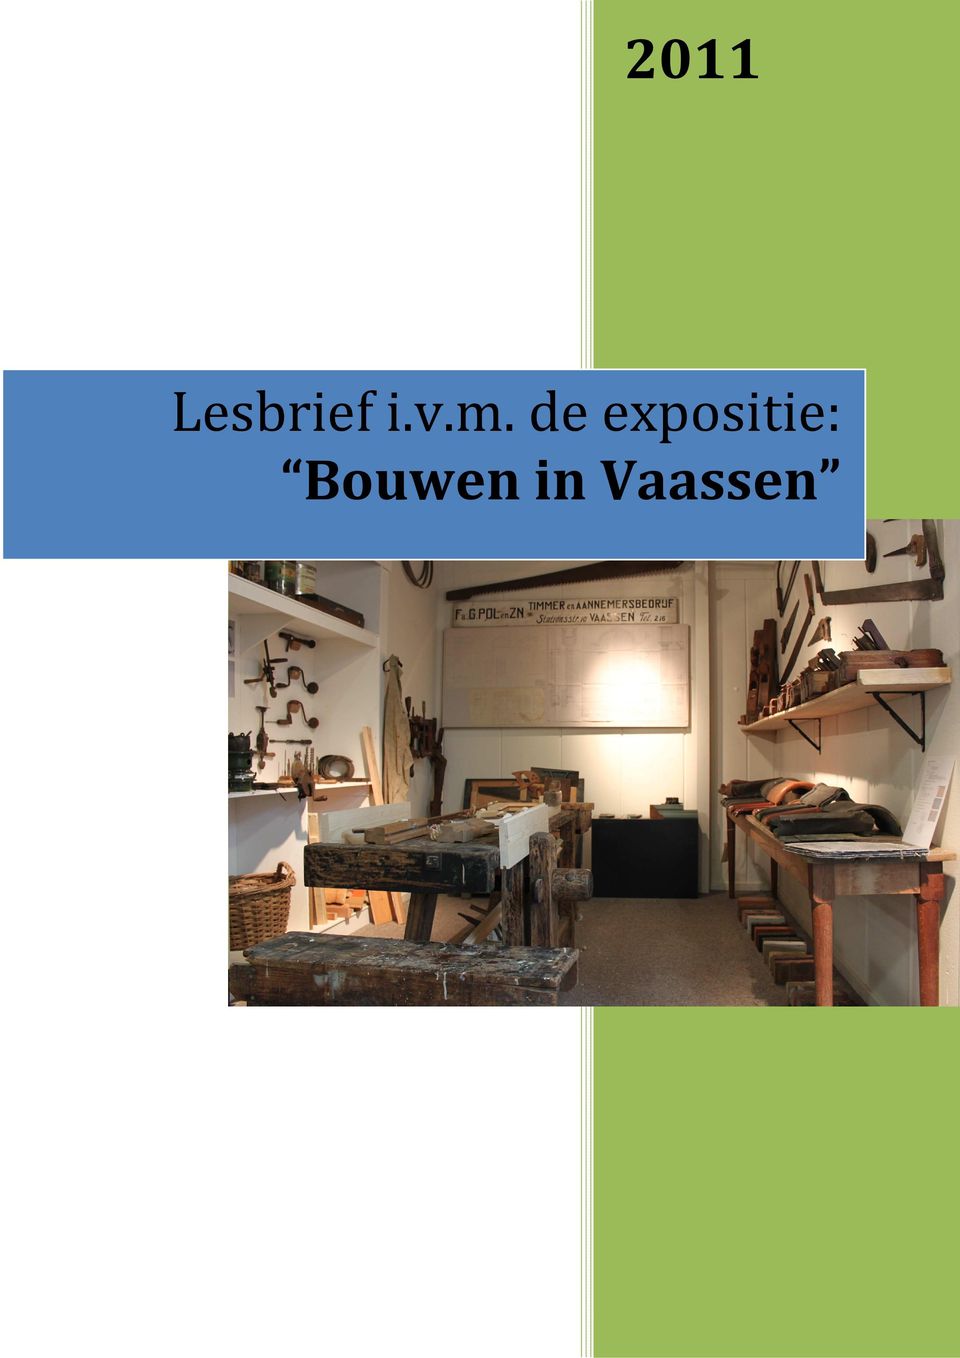 in Vaassen Museum